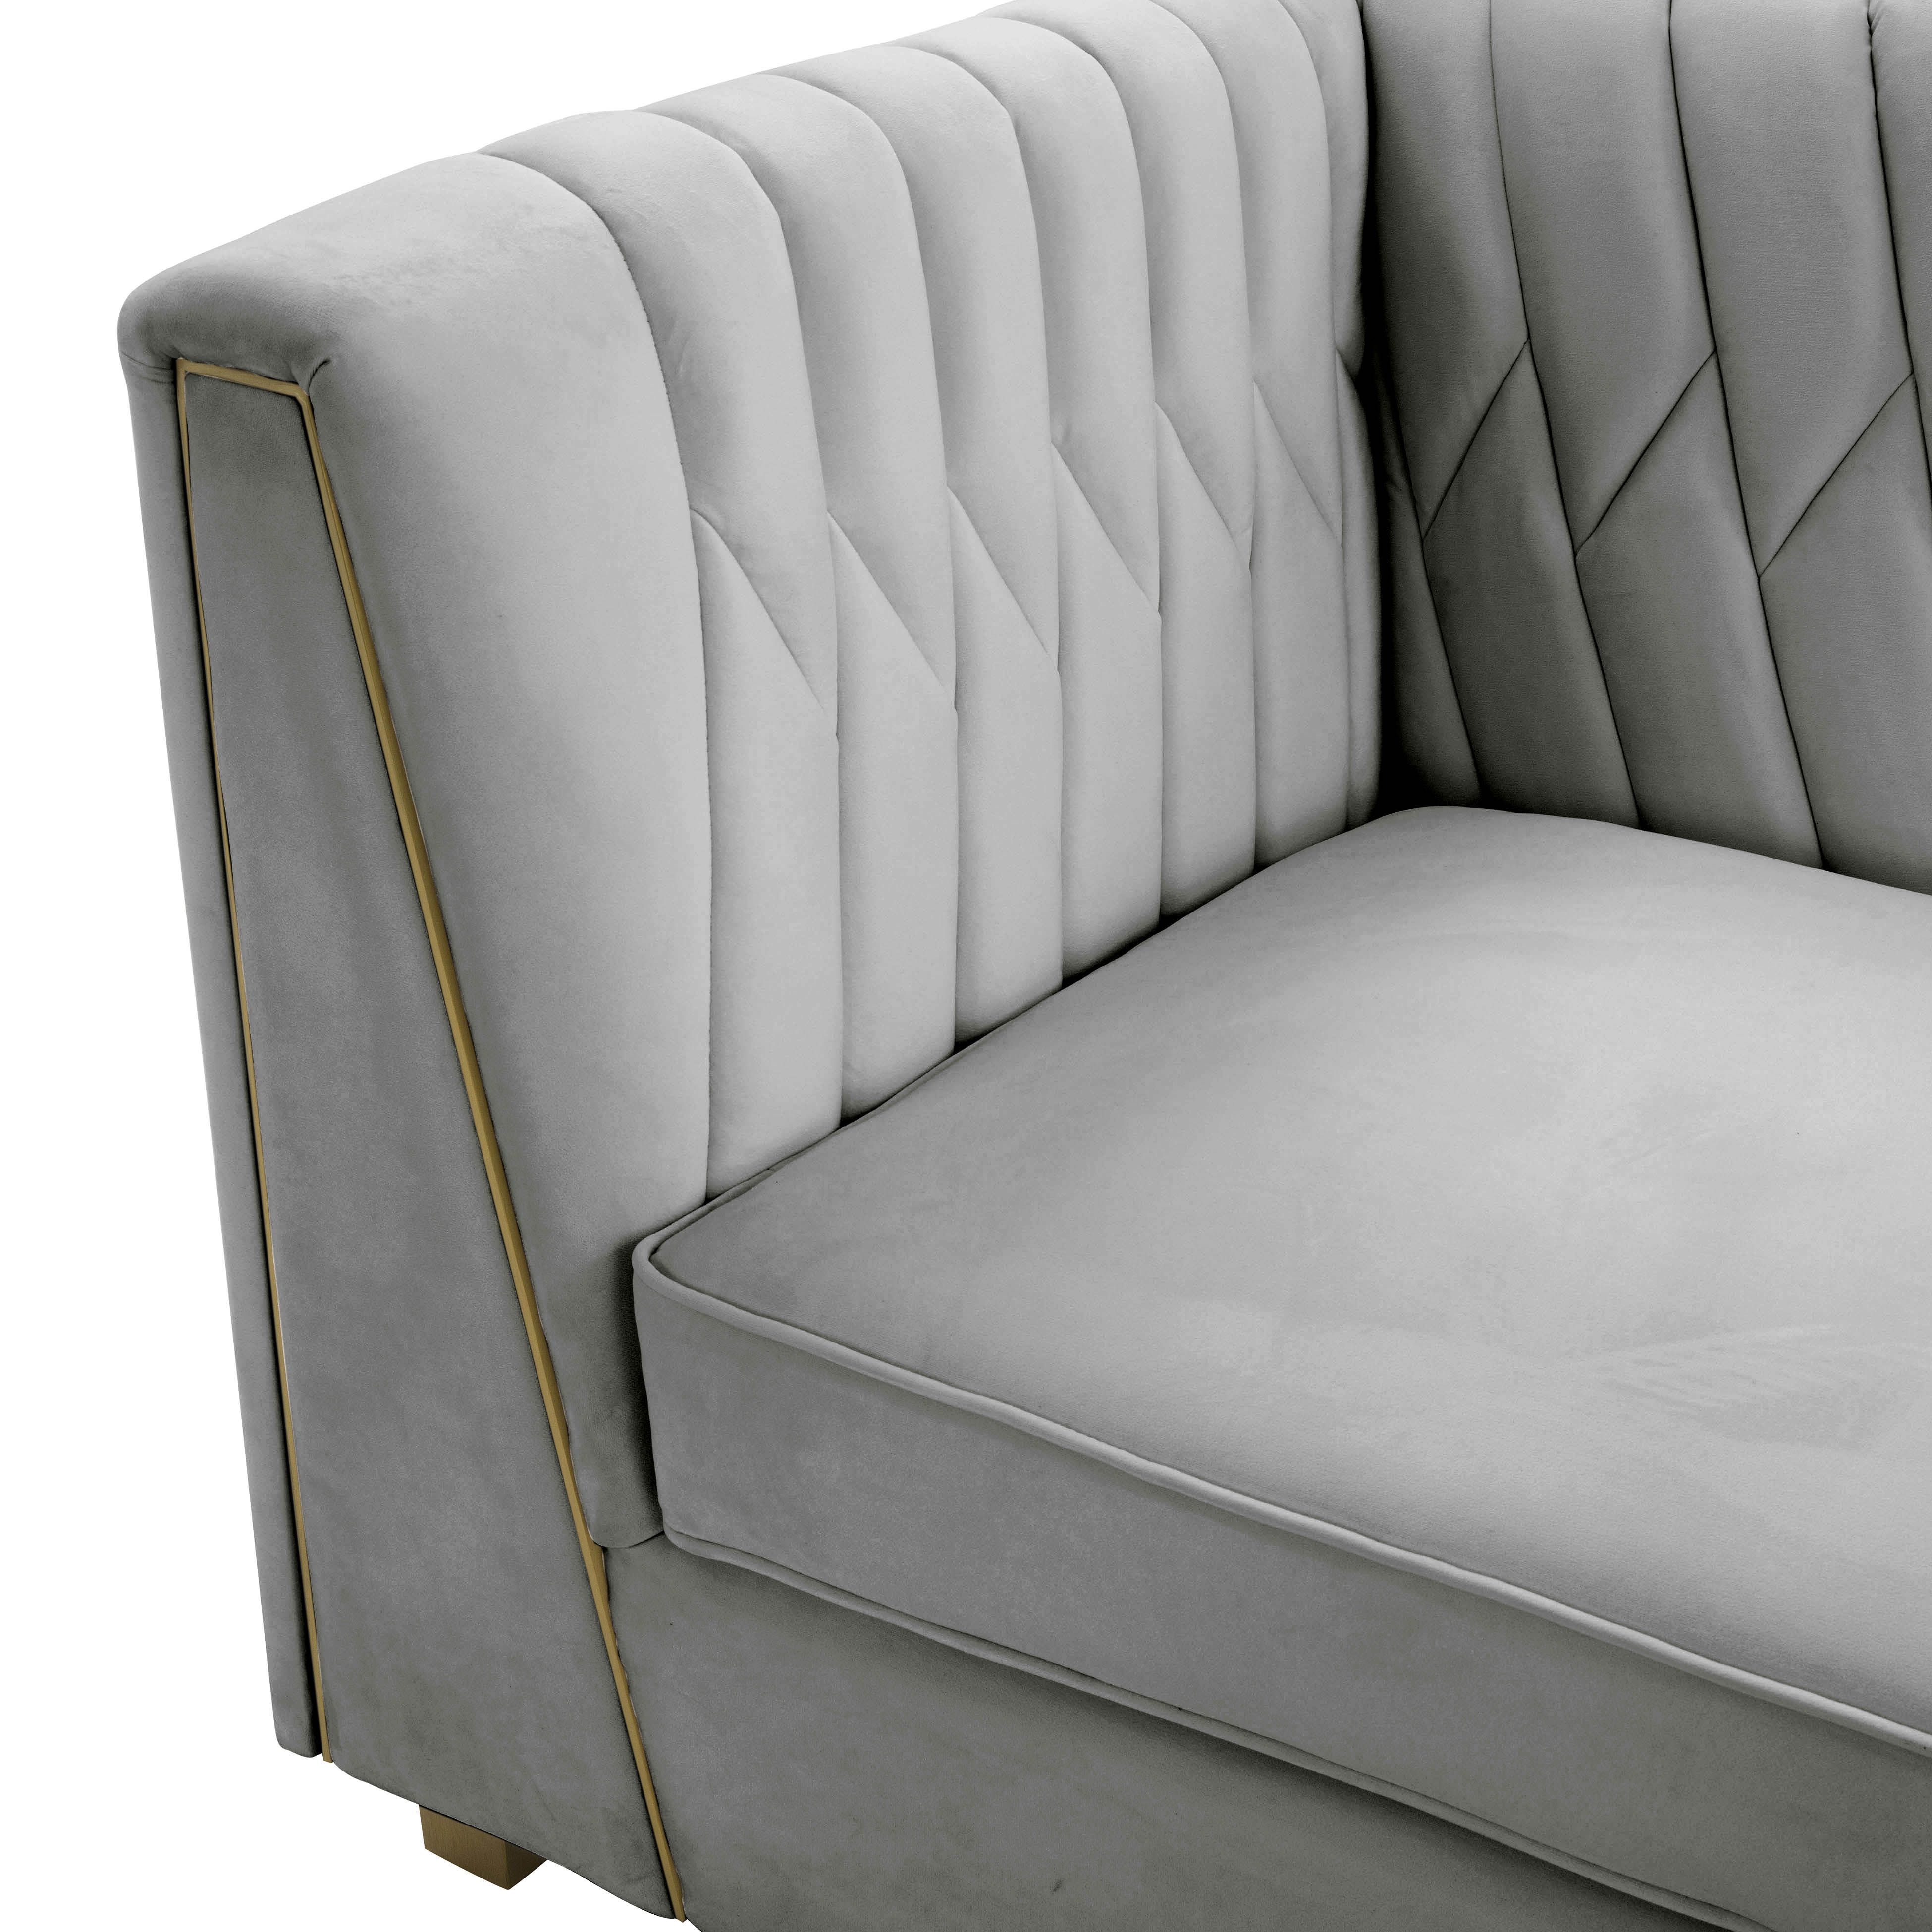 Wafa Light Grey Velvet Sofainspire Me! Home Decor – Tov Furniture In Light Gray Velvet Sofas (Gallery 2 of 20)